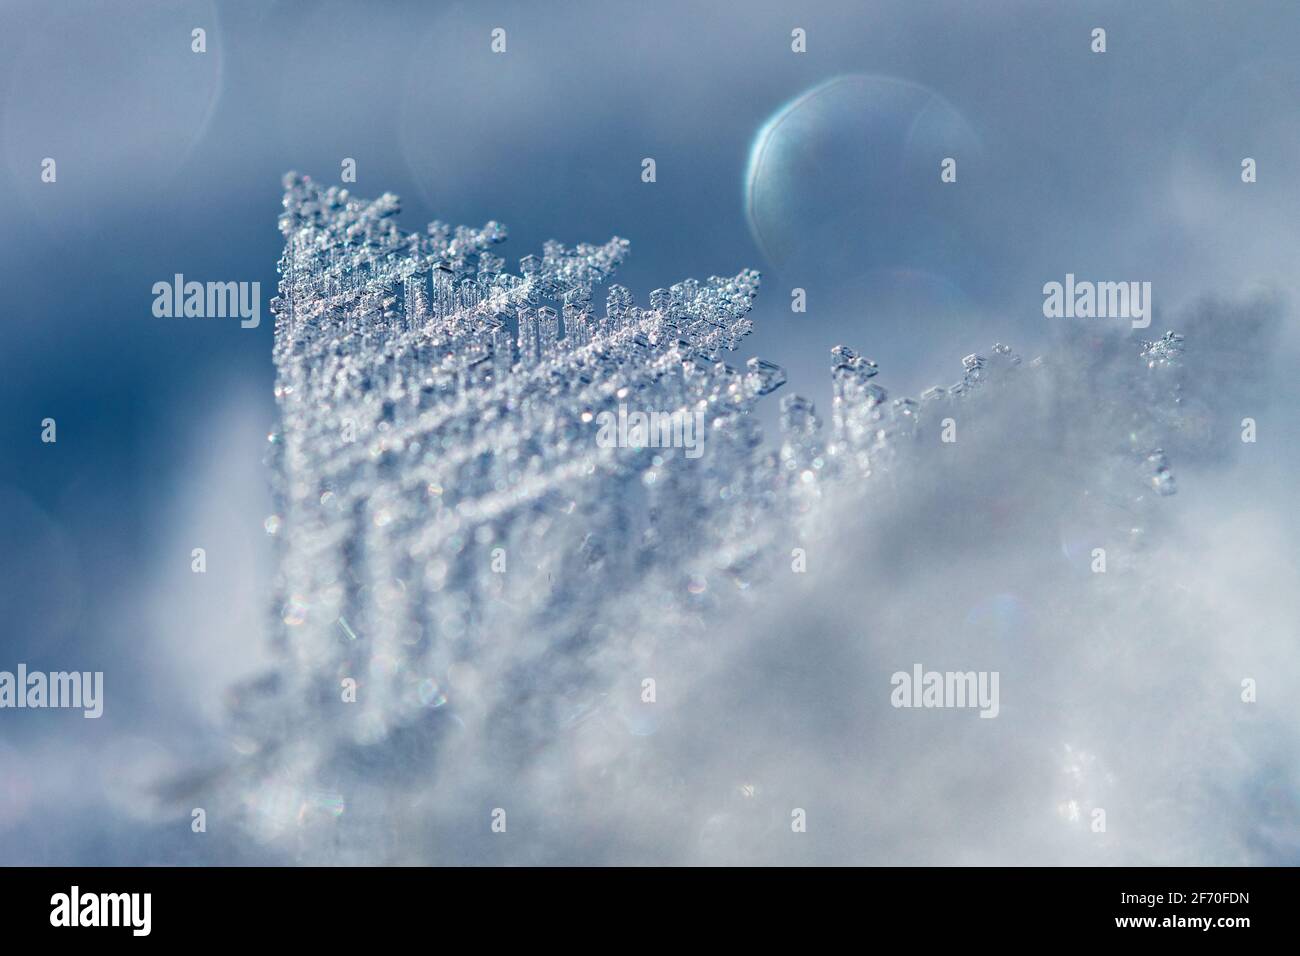 Makrobild von Frost, der empfindliche Pyramidenformen auf einem bildet Wintermorgen in kühlem blauem Licht Stockfoto